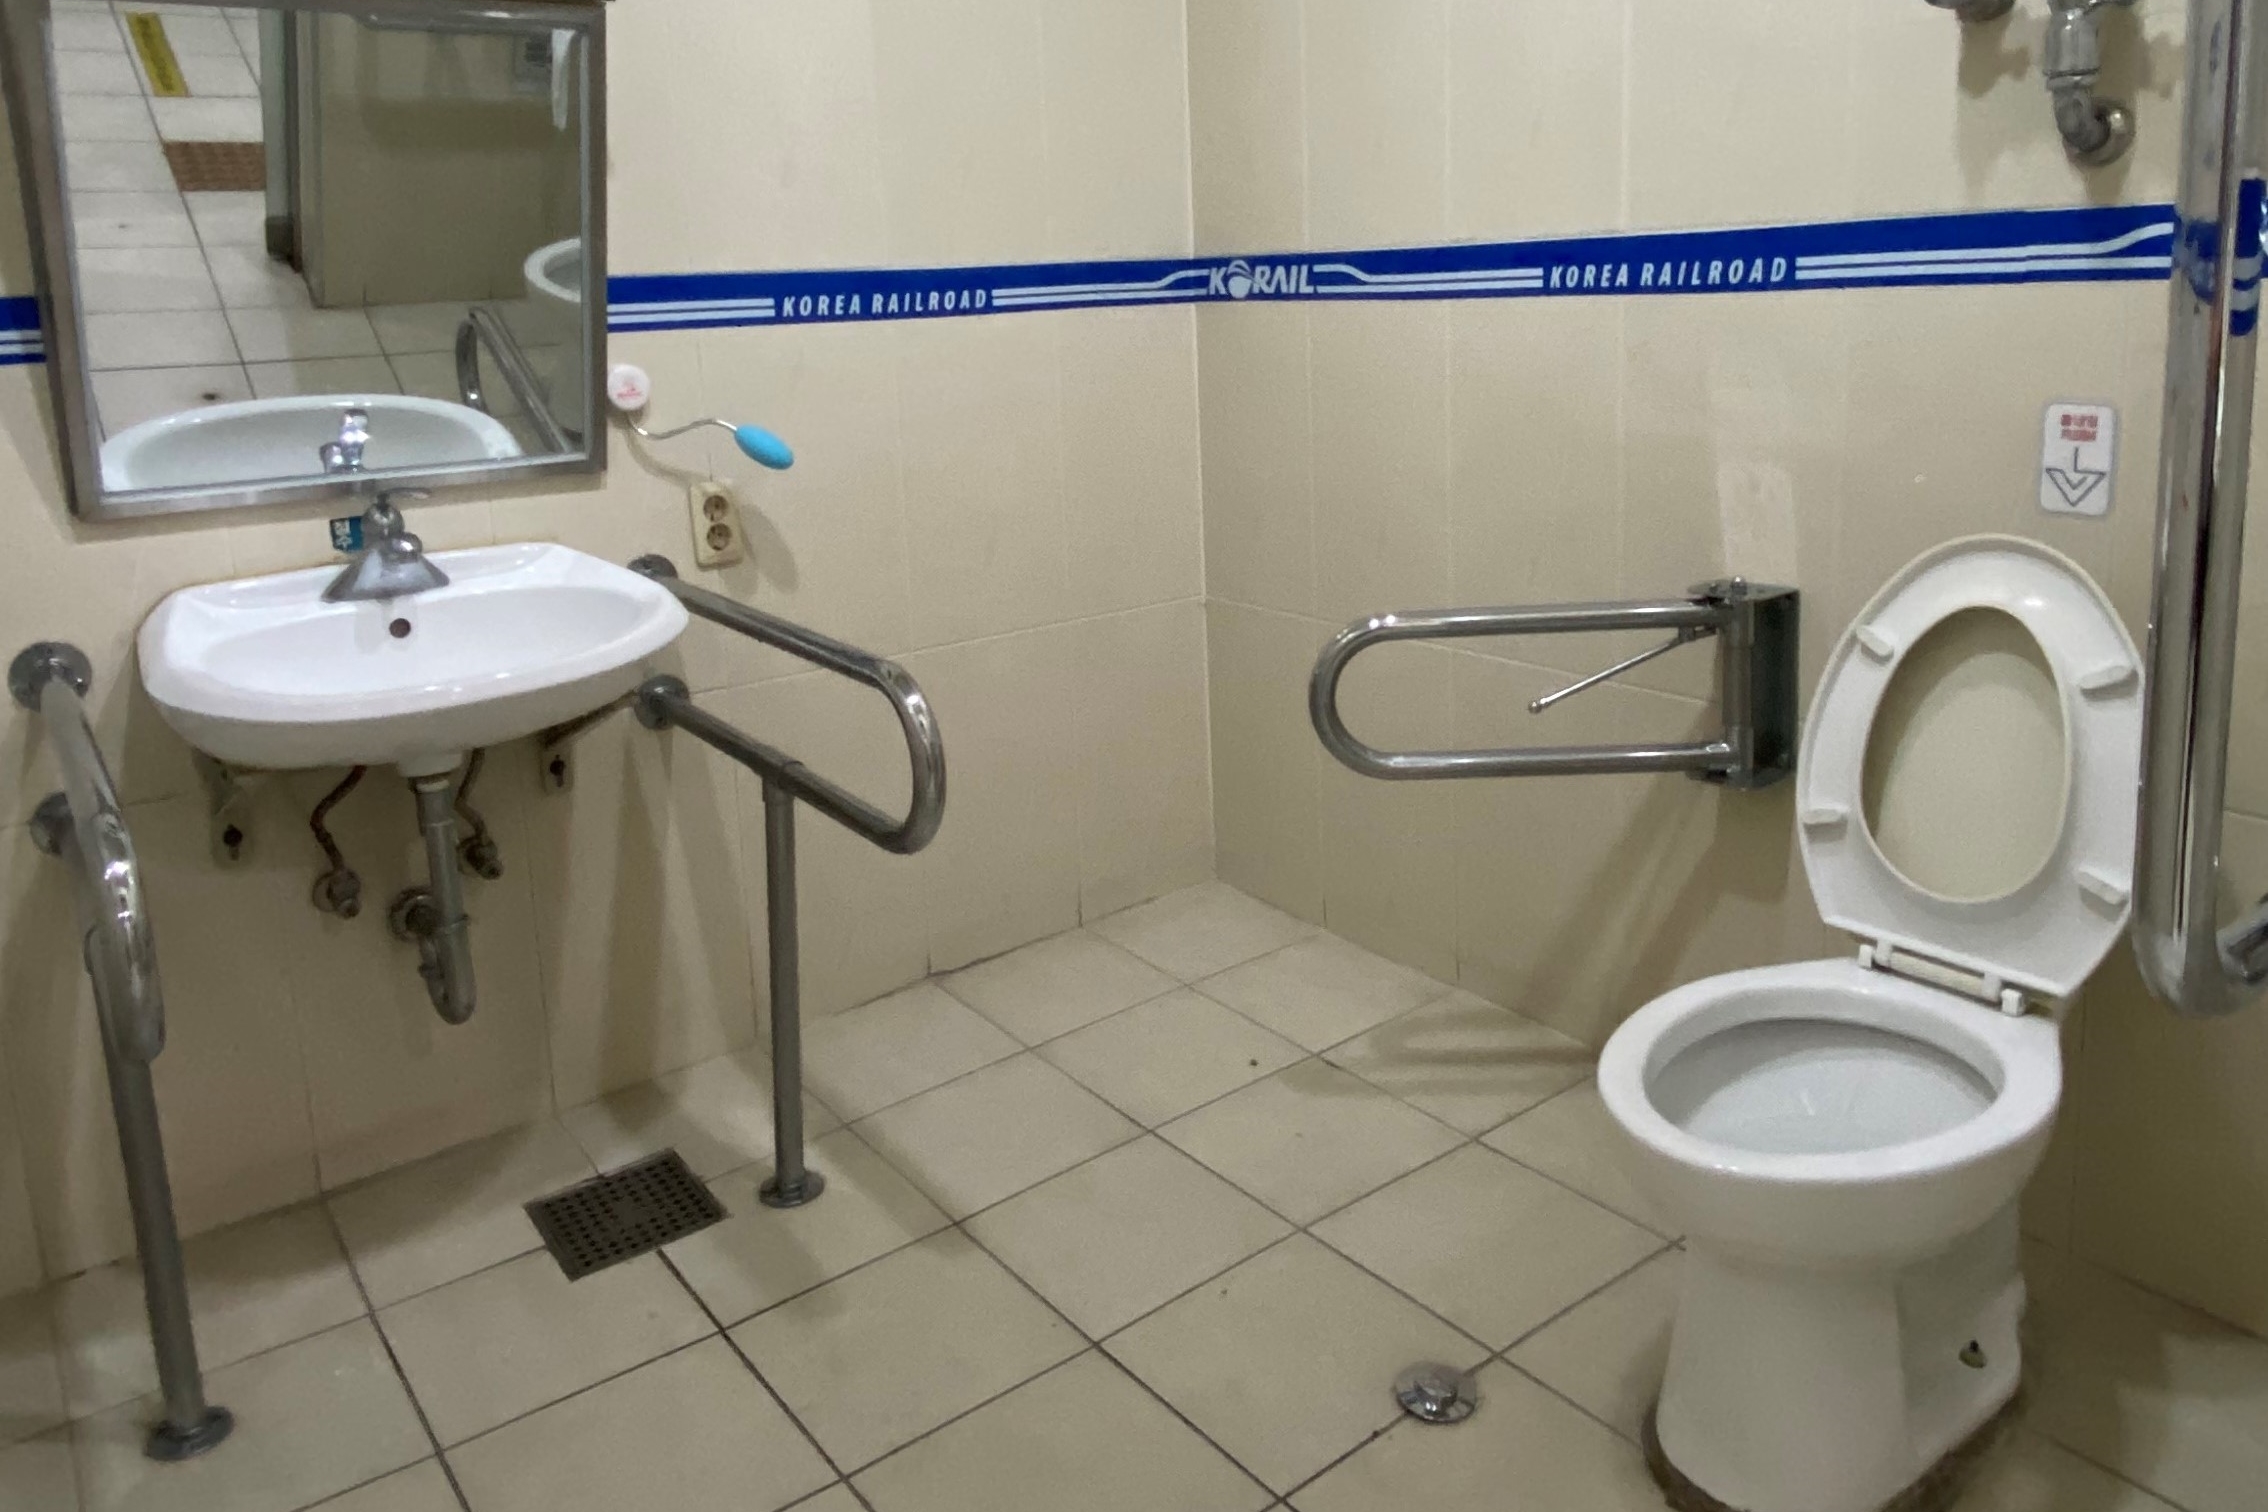 인근 장애인화장실0 : 공간이 넓어 휠체어 사용 가능한 신촌역 관광안내소 장애인화장실 내부 모습
